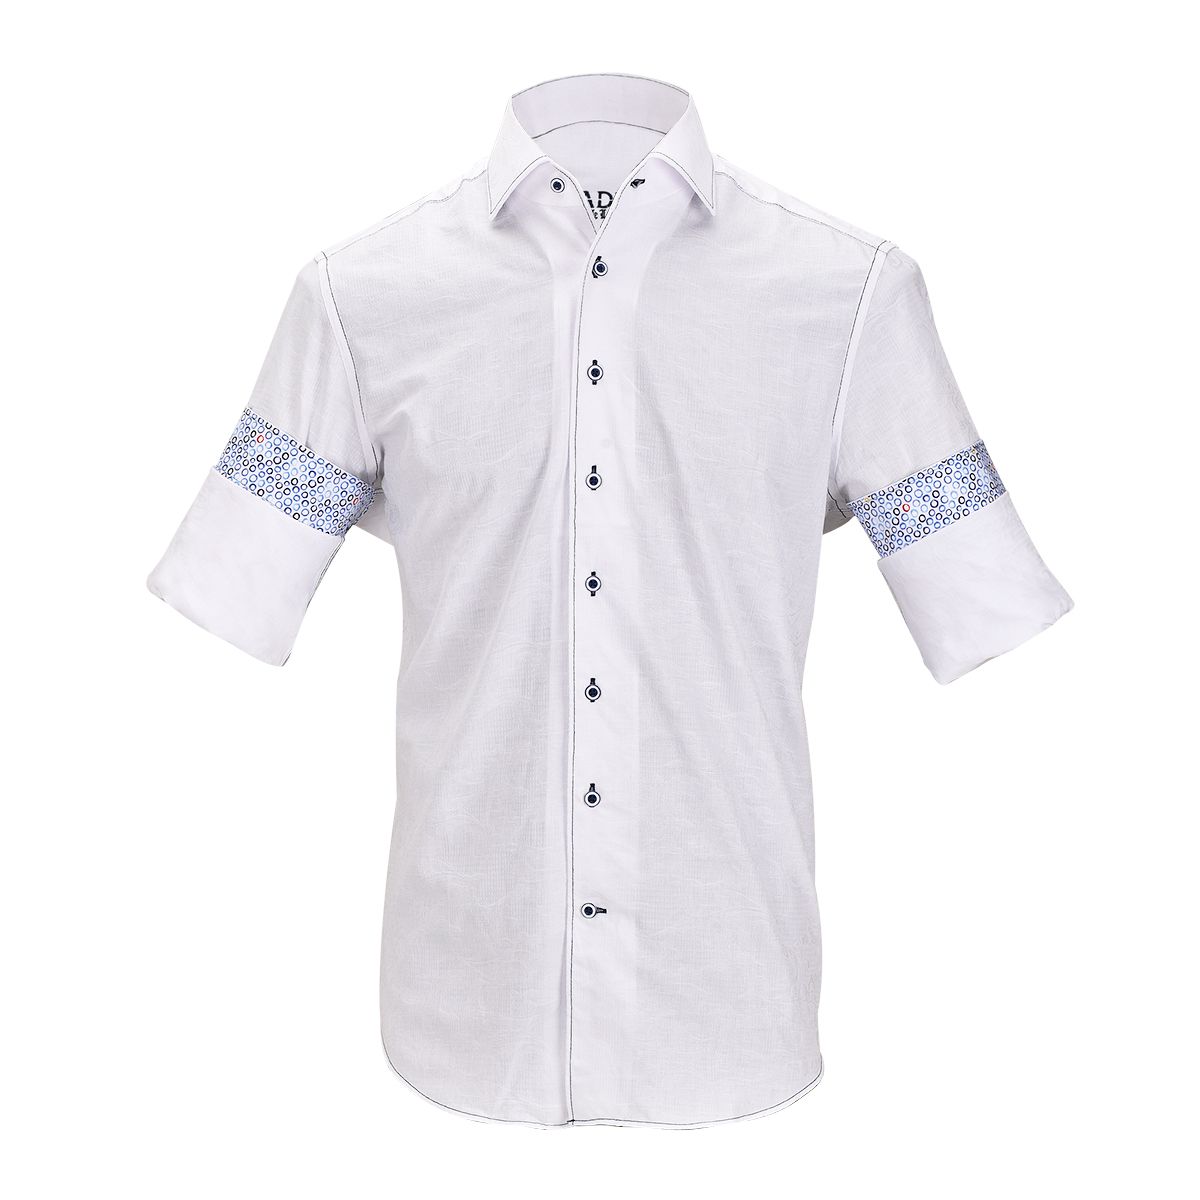 CMW466R - Cuadra white fashion casual soft cotton paisley shirt for men-CUADRA-Kuet-Cuadra-Boots